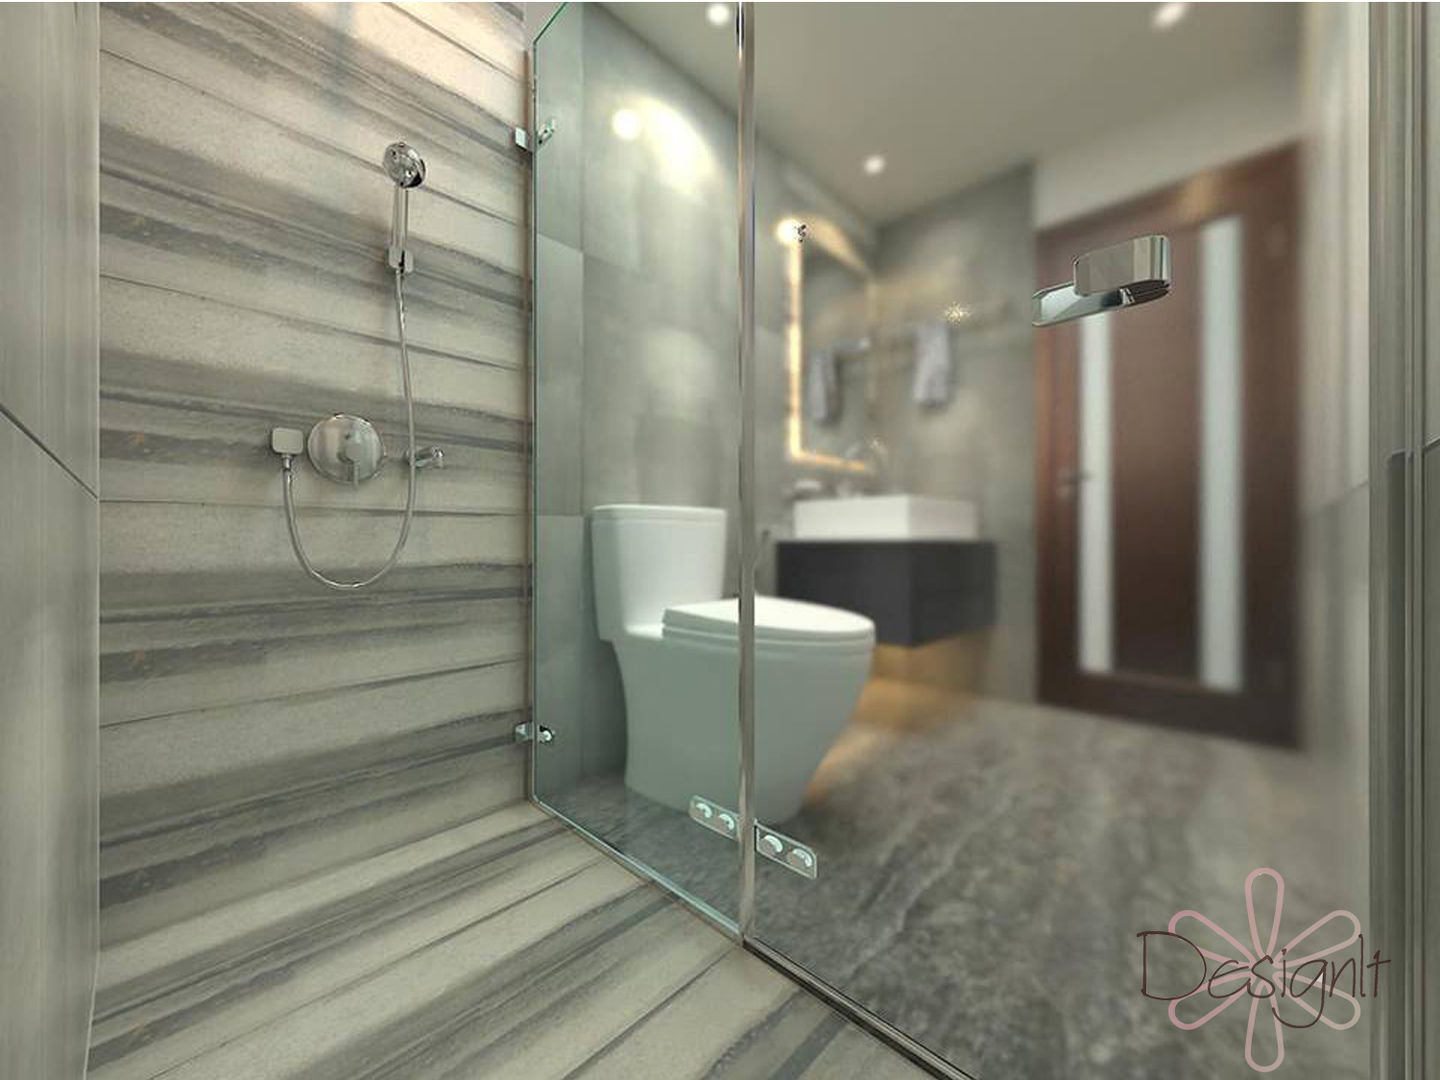 Bathroom, DESIGNIT DESIGNIT Baños de estilo moderno Azulejos